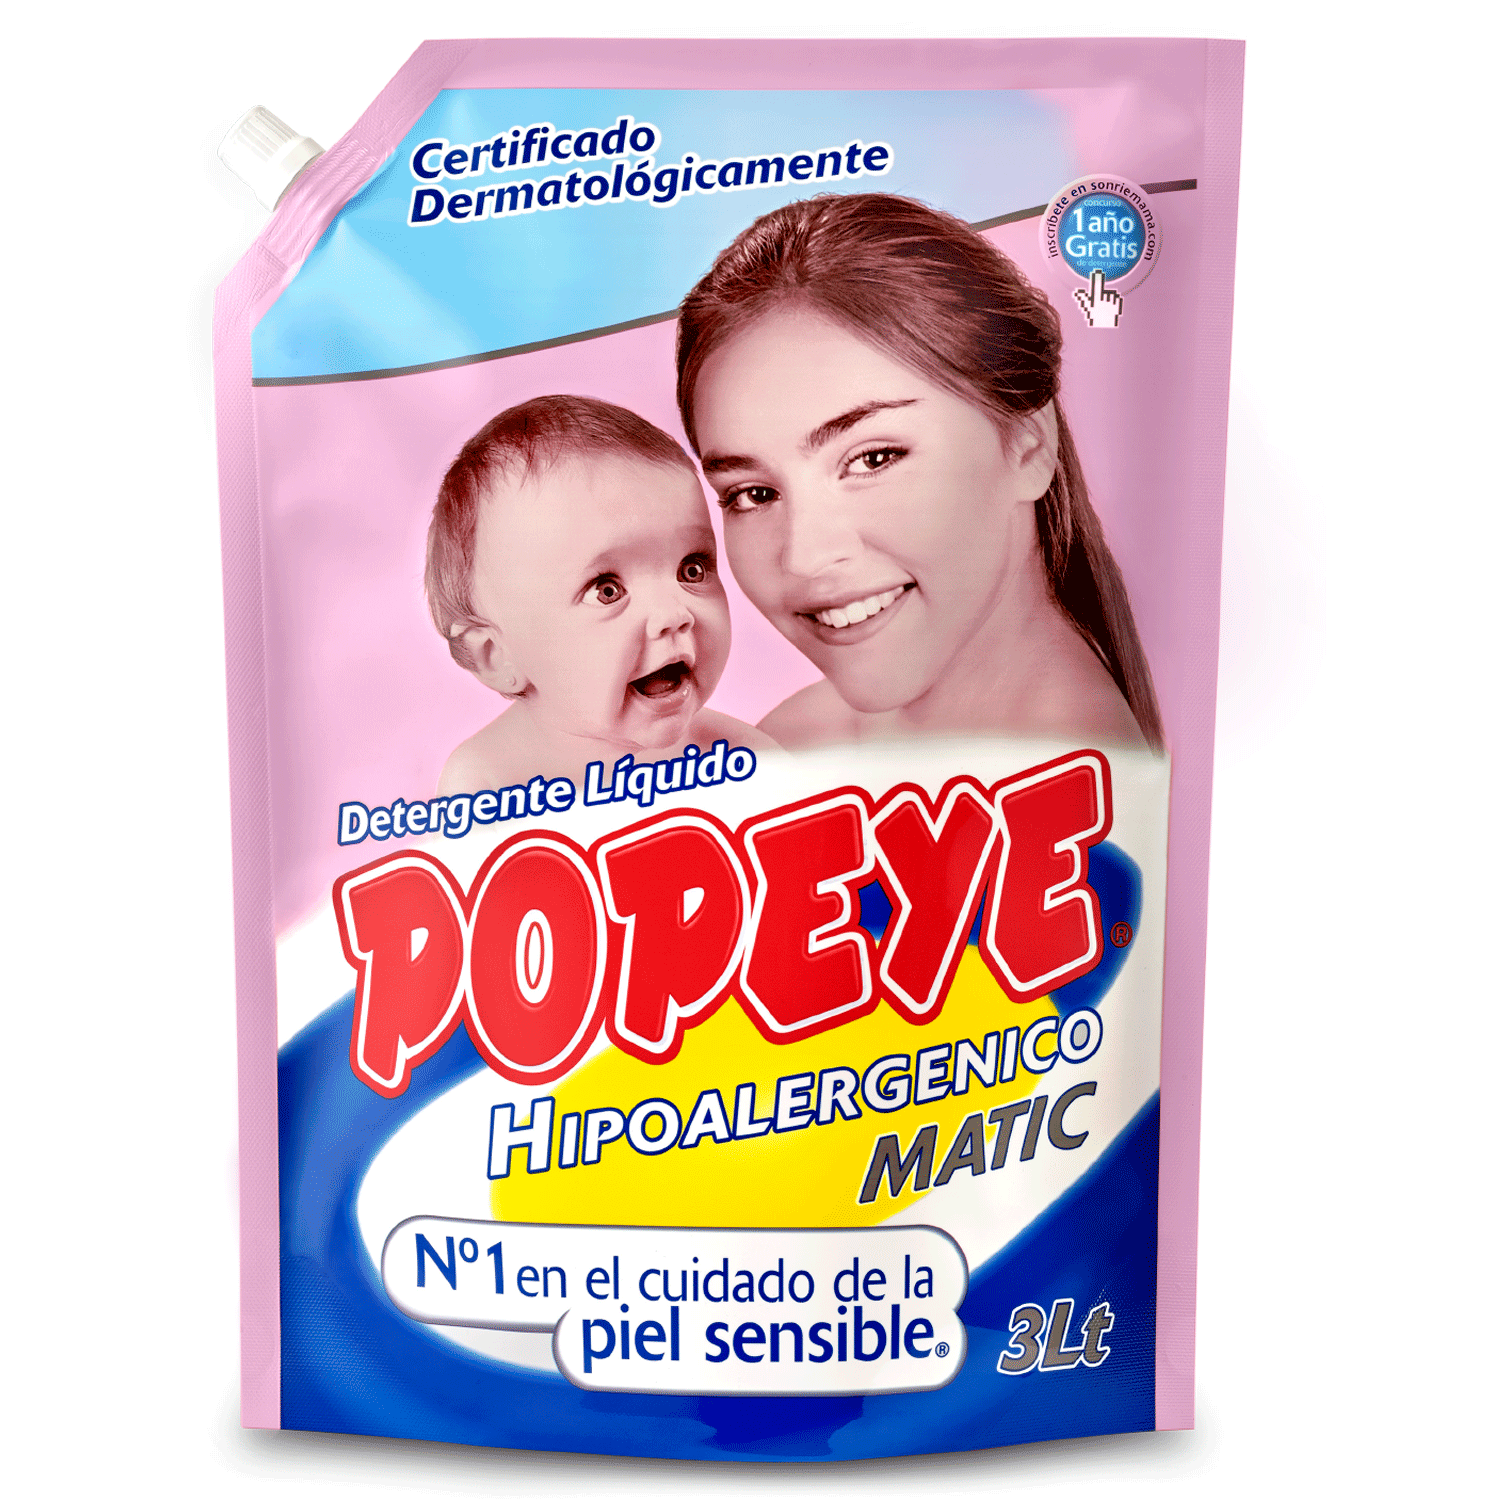 Detergente Liquido Popeye Hipoalergenico Bebe 3L